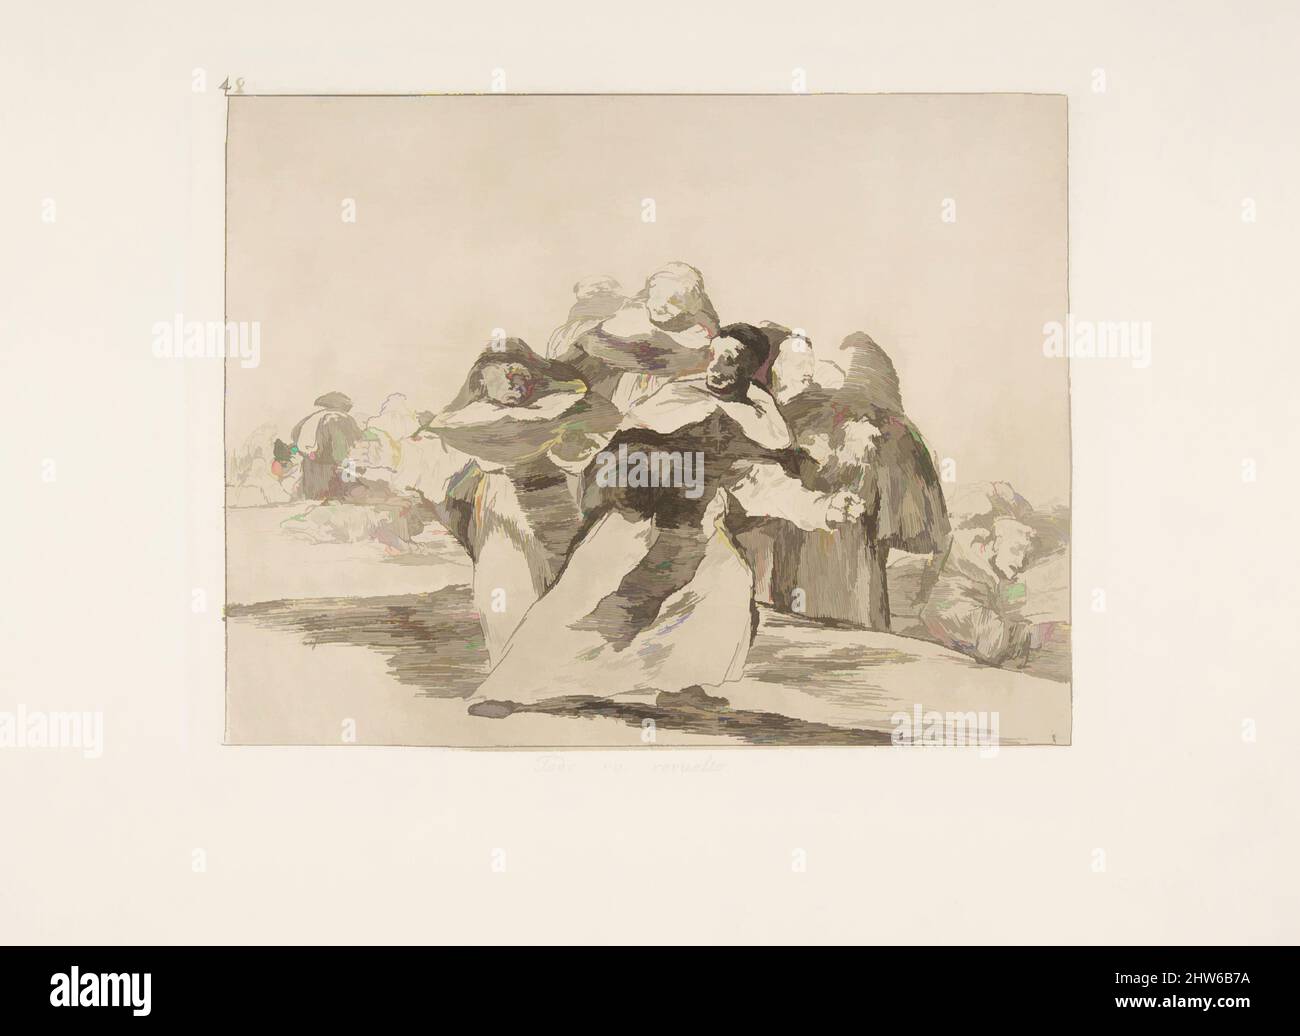 Art inspiré par la planche 42 de 'les désastres de la guerre' (Los Desastres de la Guerra): 'Tout est Topsy-turvey.'(Todo va revuelto.), 1810 (publié en 1863), Etching et burin, plaque: 6 3/4 × 8 9/16 in. (17,2 × 21,7 cm), Prints, Goya (Francisco de Goya y Lucientes) (Espagnol, Fuendetodos, oeuvres classiques modernisées par Artotop avec une touche de modernité. Formes, couleur et valeur, impact visuel accrocheur sur l'art émotions par la liberté d'œuvres d'art d'une manière contemporaine. Un message intemporel qui cherche une nouvelle direction créative. Artistes qui se tournent vers le support numérique et créent le NFT Artotop Banque D'Images